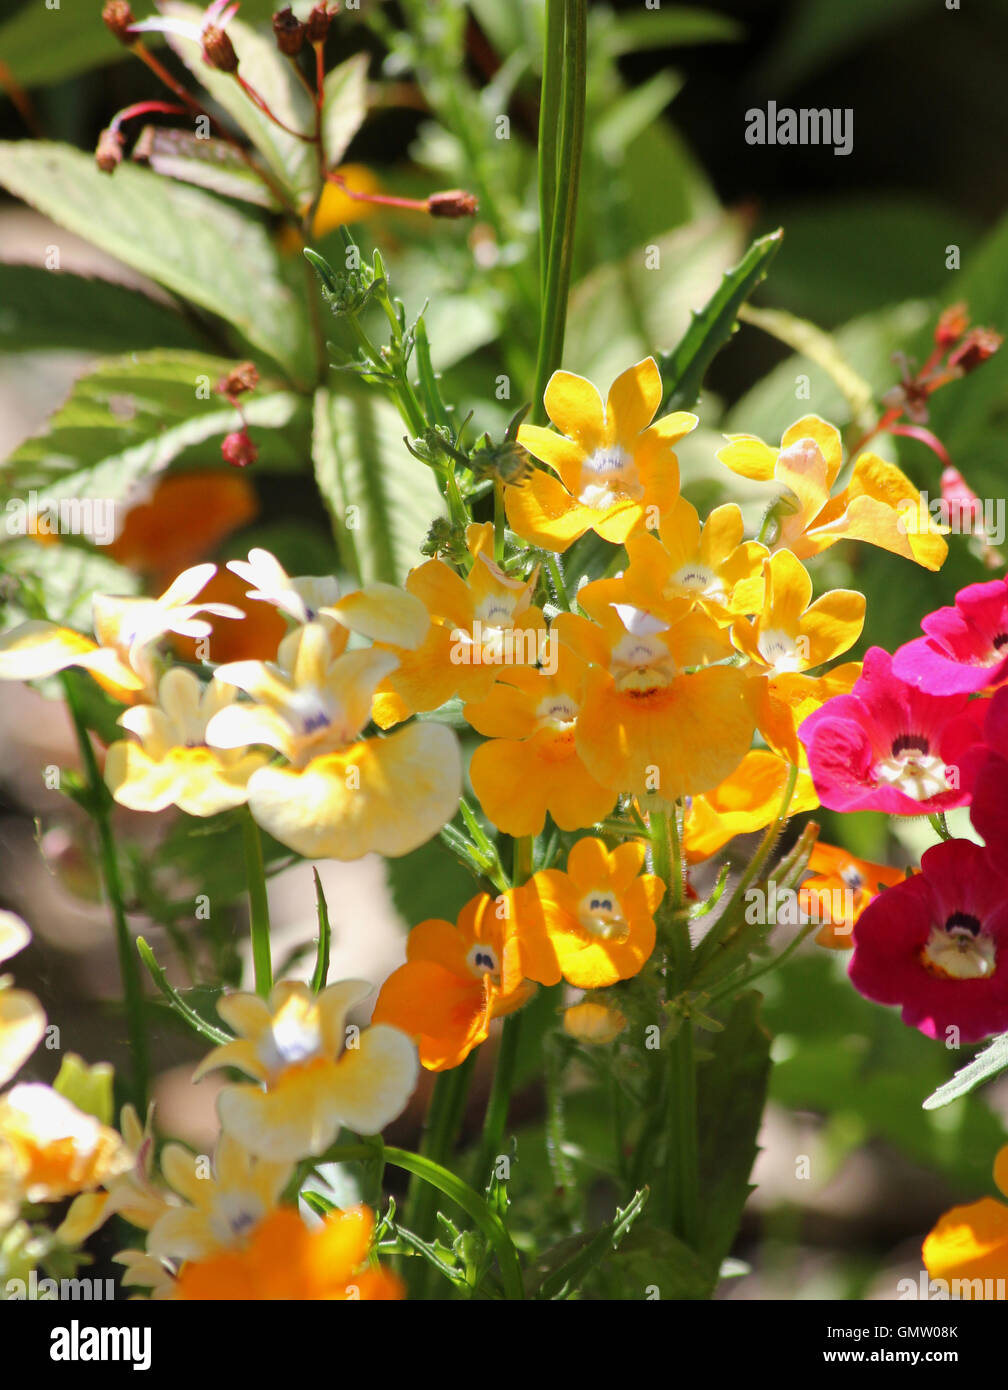 Amarillo y rosa nemesia "tapiz" de flores en tonos del sol con hojas y semillas de Gillenia trifoliata en segundo plano. Foto de stock